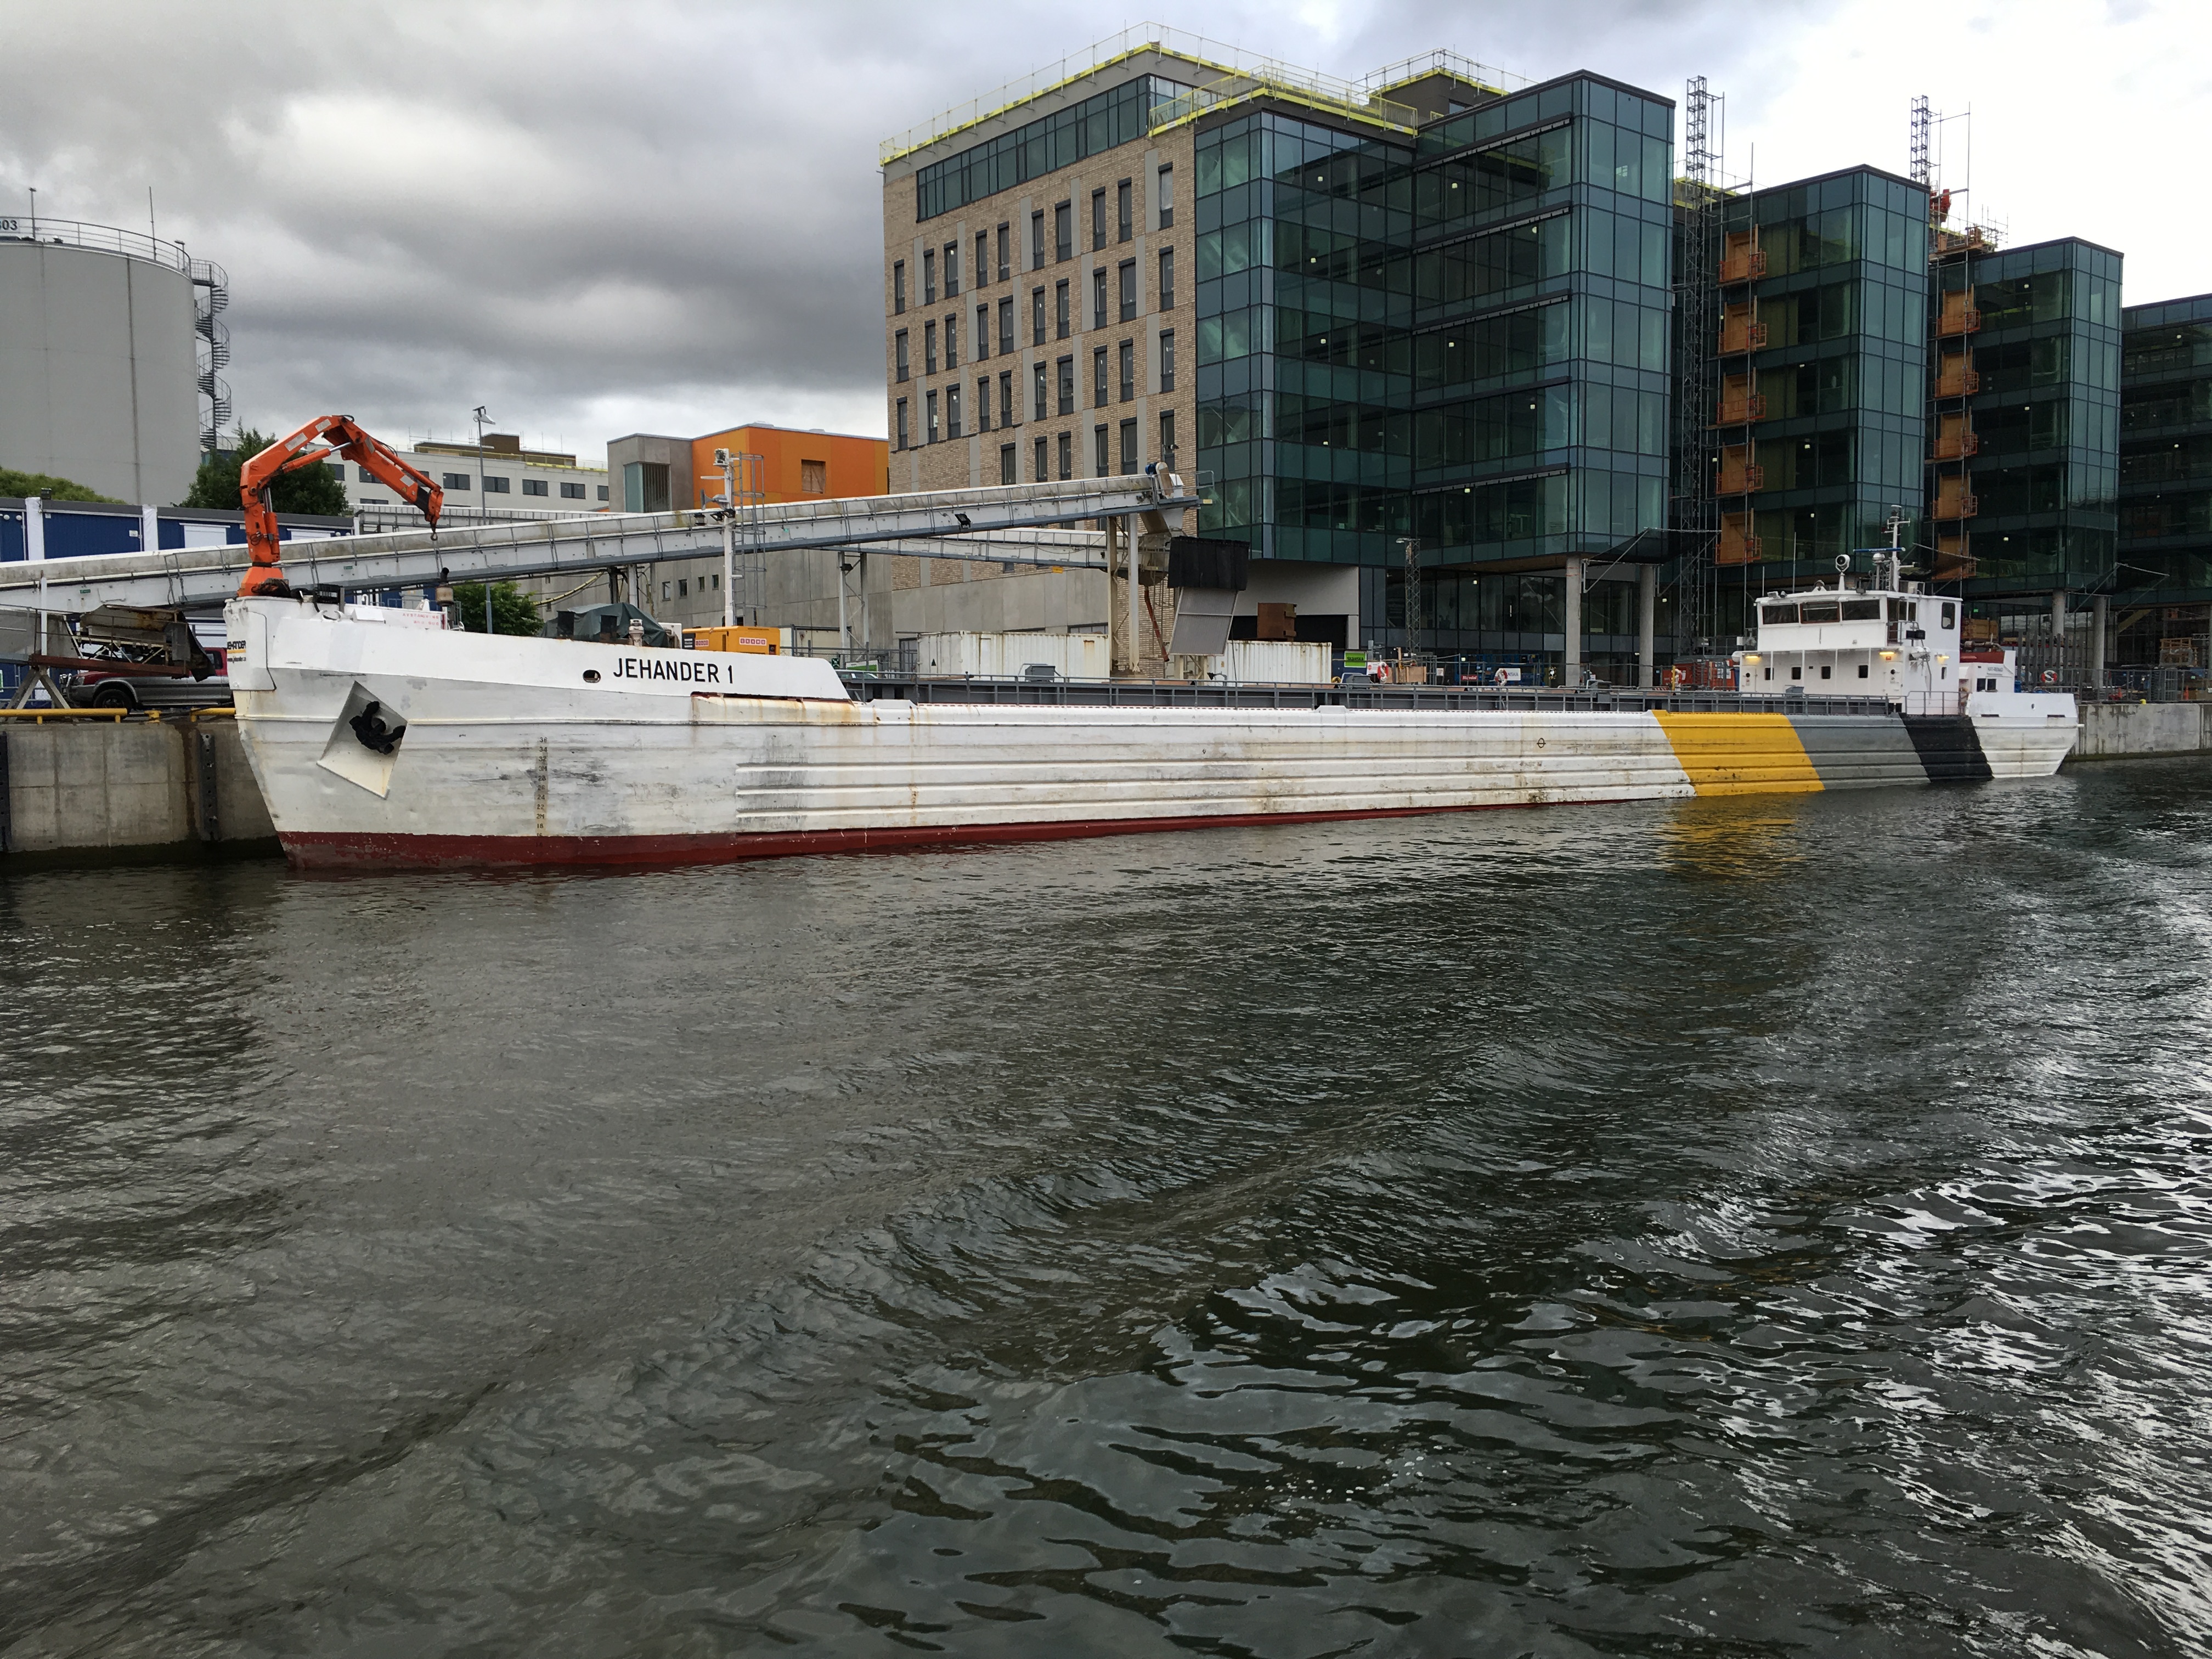 Fartyget Jehander 1 kommer lastat i Hammarbykanalen. Jehander 1 fraktar ca 400 000 ton/år, och går på sträckan Ekerö, Södertälje - Stockholms hamn.